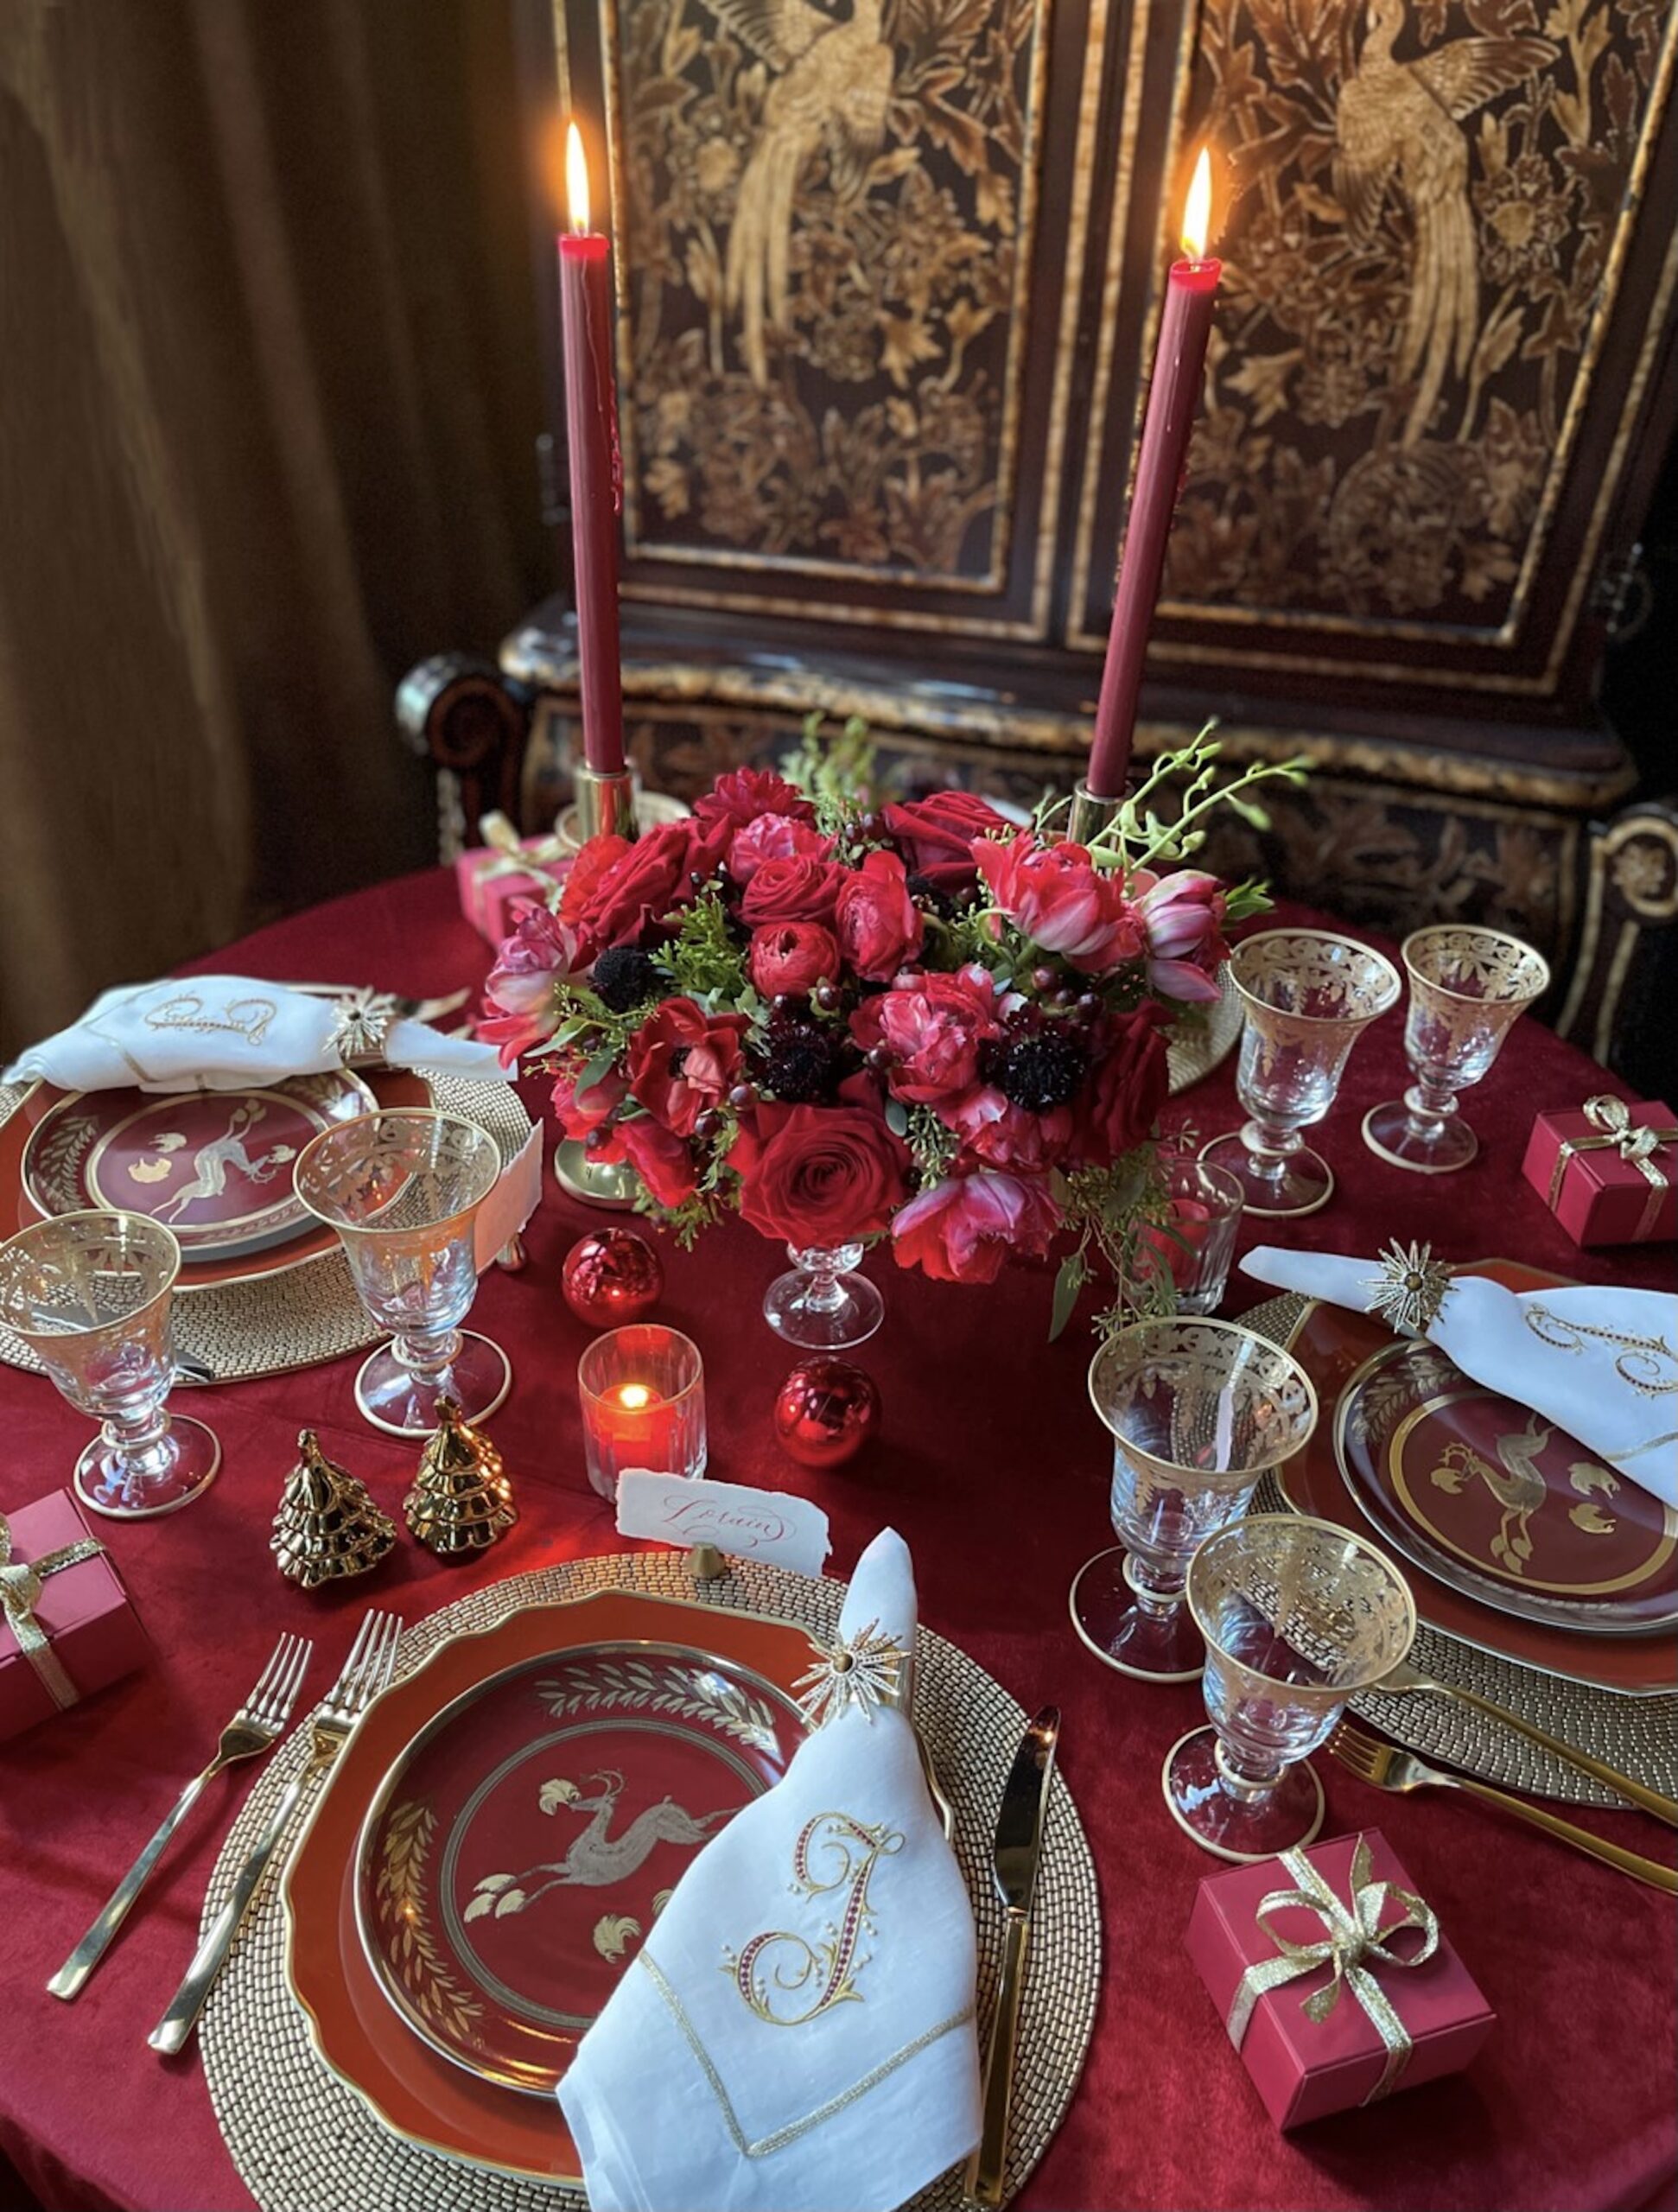 Gold Floral Pattern Placemat & Napkin Set for Elegant Dinner